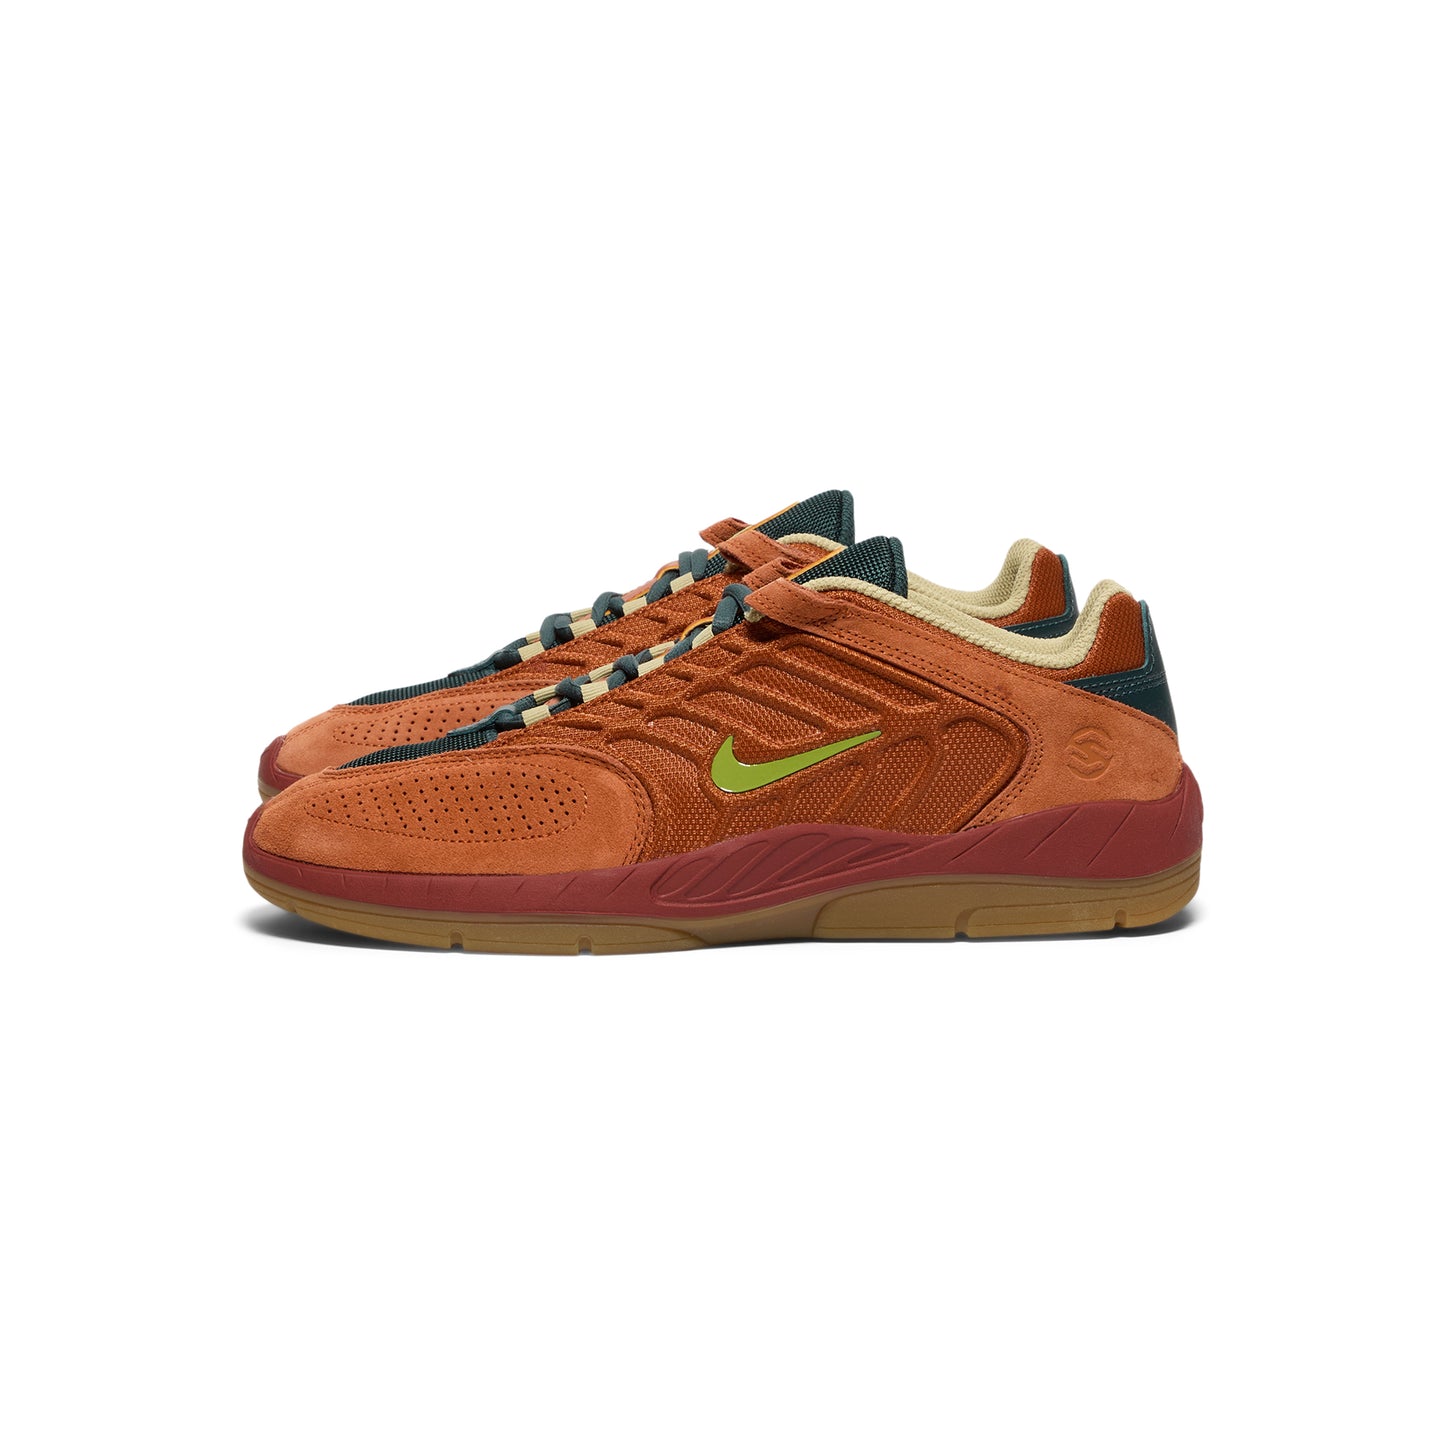 Nike SB Vertebrae (Dark Russet/Pear/Desert Orange)